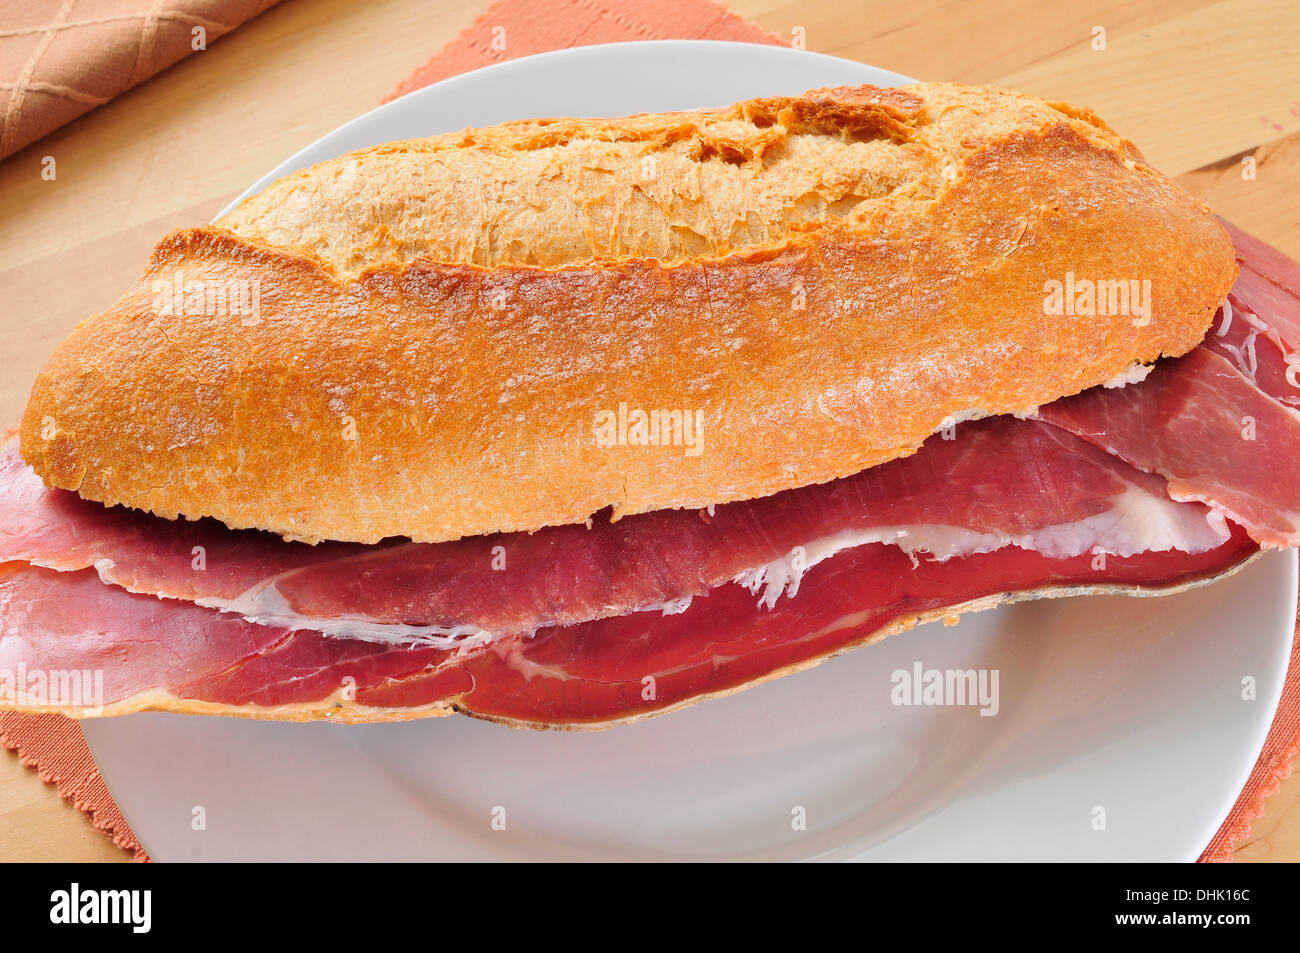 Un bocadillo de jamon serrano espagnol, un sandwich au jambon serrano Banque D'Images